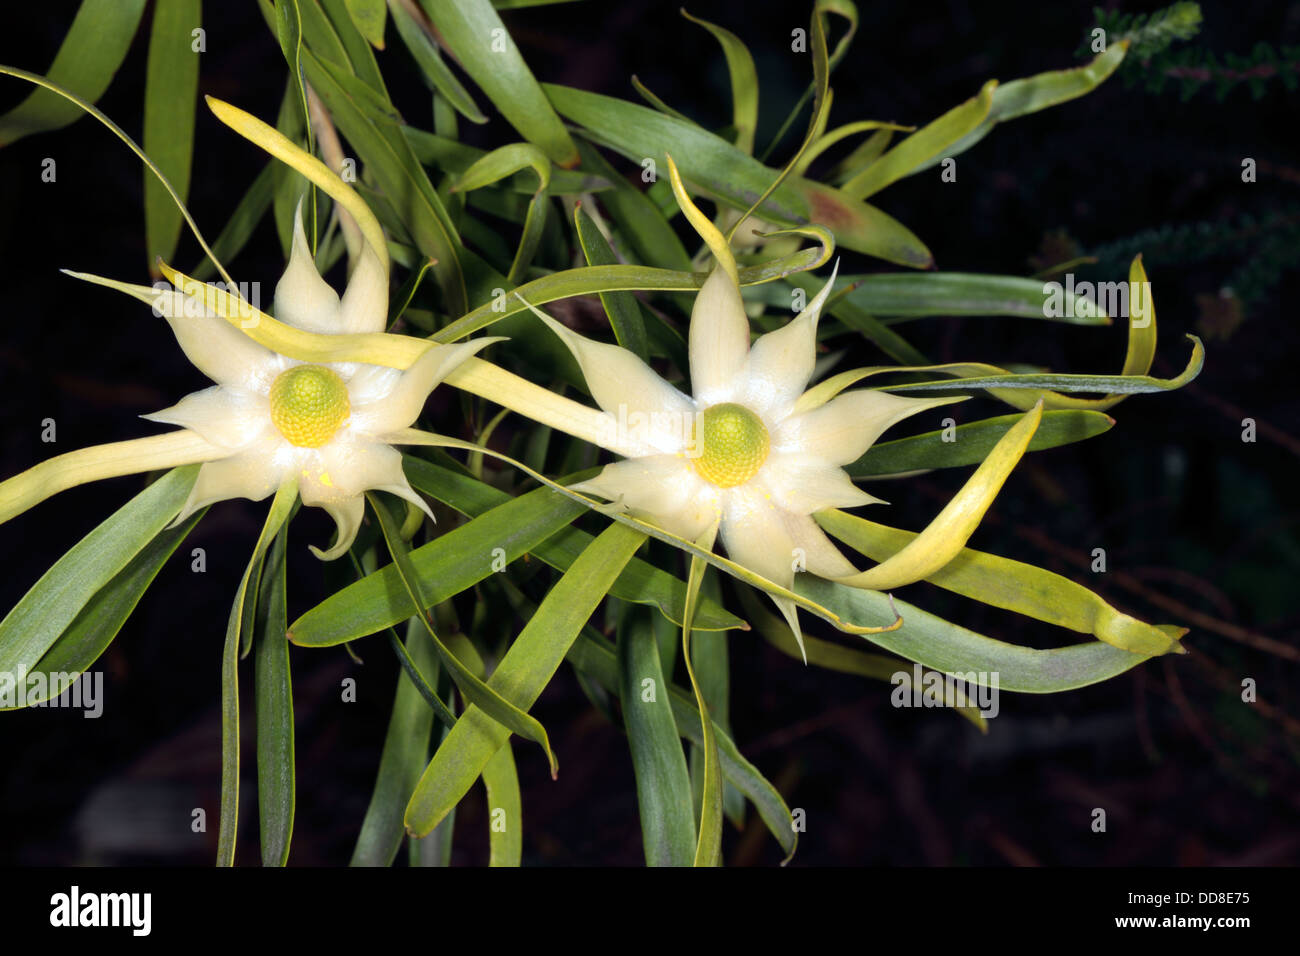 Gomme mâle-feuille Conebush flower- Leucadendron eucalyptifolium- un soleil  Conebush - famille des Protéacées Photo Stock - Alamy